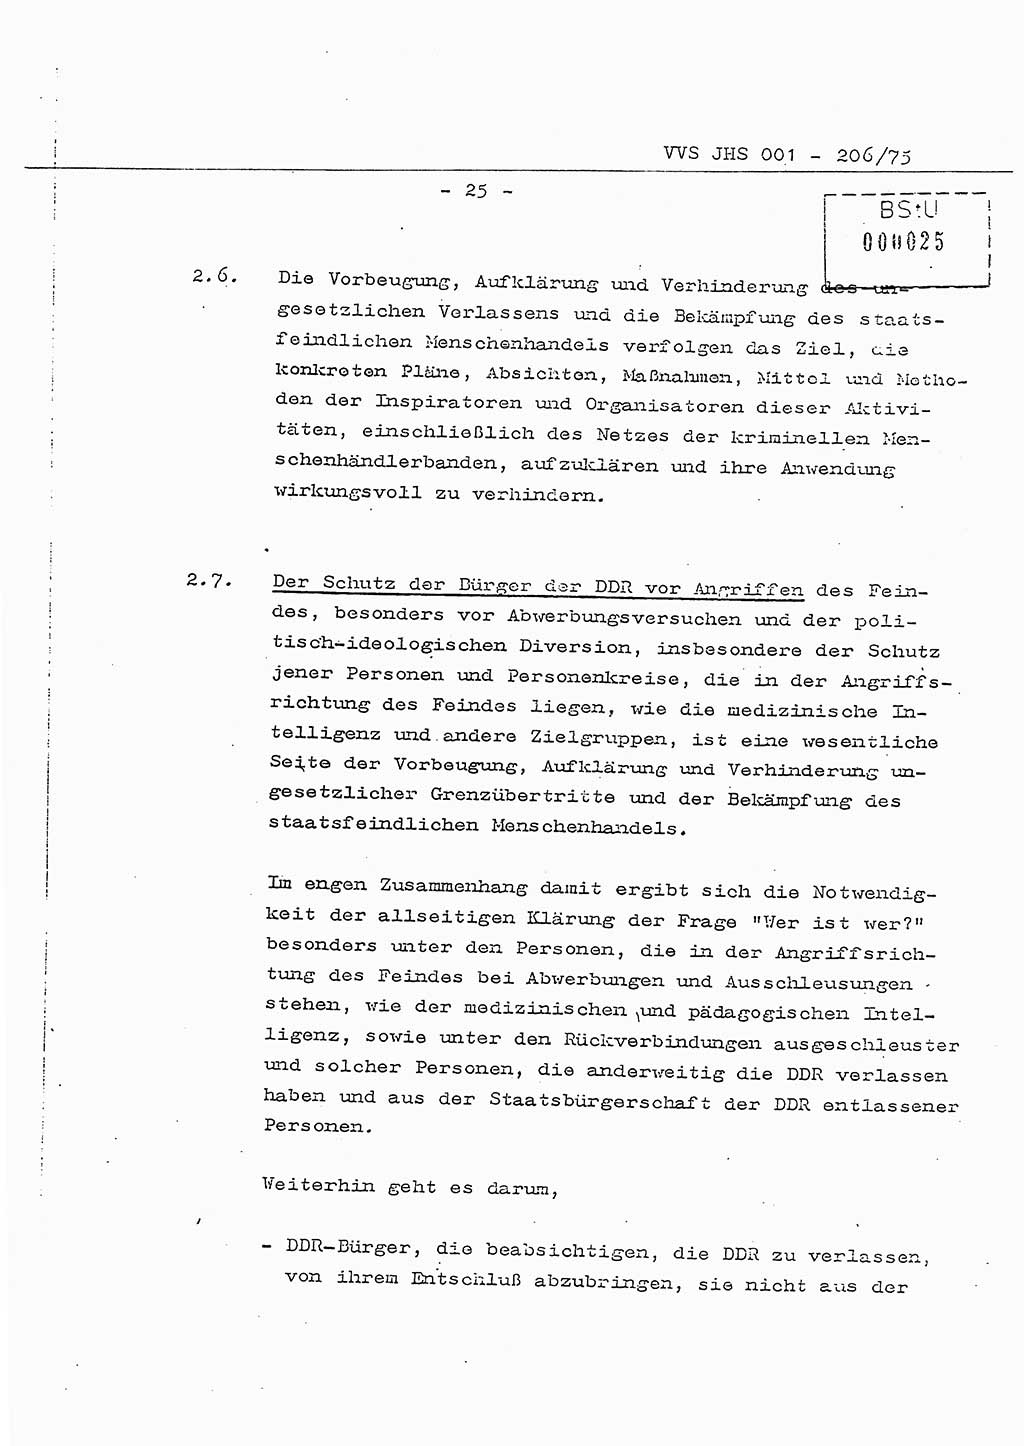 Dissertation Generalmajor Manfred Hummitzsch (Leiter der BV Leipzig), Generalmajor Heinz Fiedler (HA Ⅵ), Oberst Rolf Fister (HA Ⅸ), Ministerium für Staatssicherheit (MfS) [Deutsche Demokratische Republik (DDR)], Juristische Hochschule (JHS), Vertrauliche Verschlußsache (VVS) 001-206/75, Potsdam 1975, Seite 25 (Diss. MfS DDR JHS VVS 001-206/75 1975, S. 25)